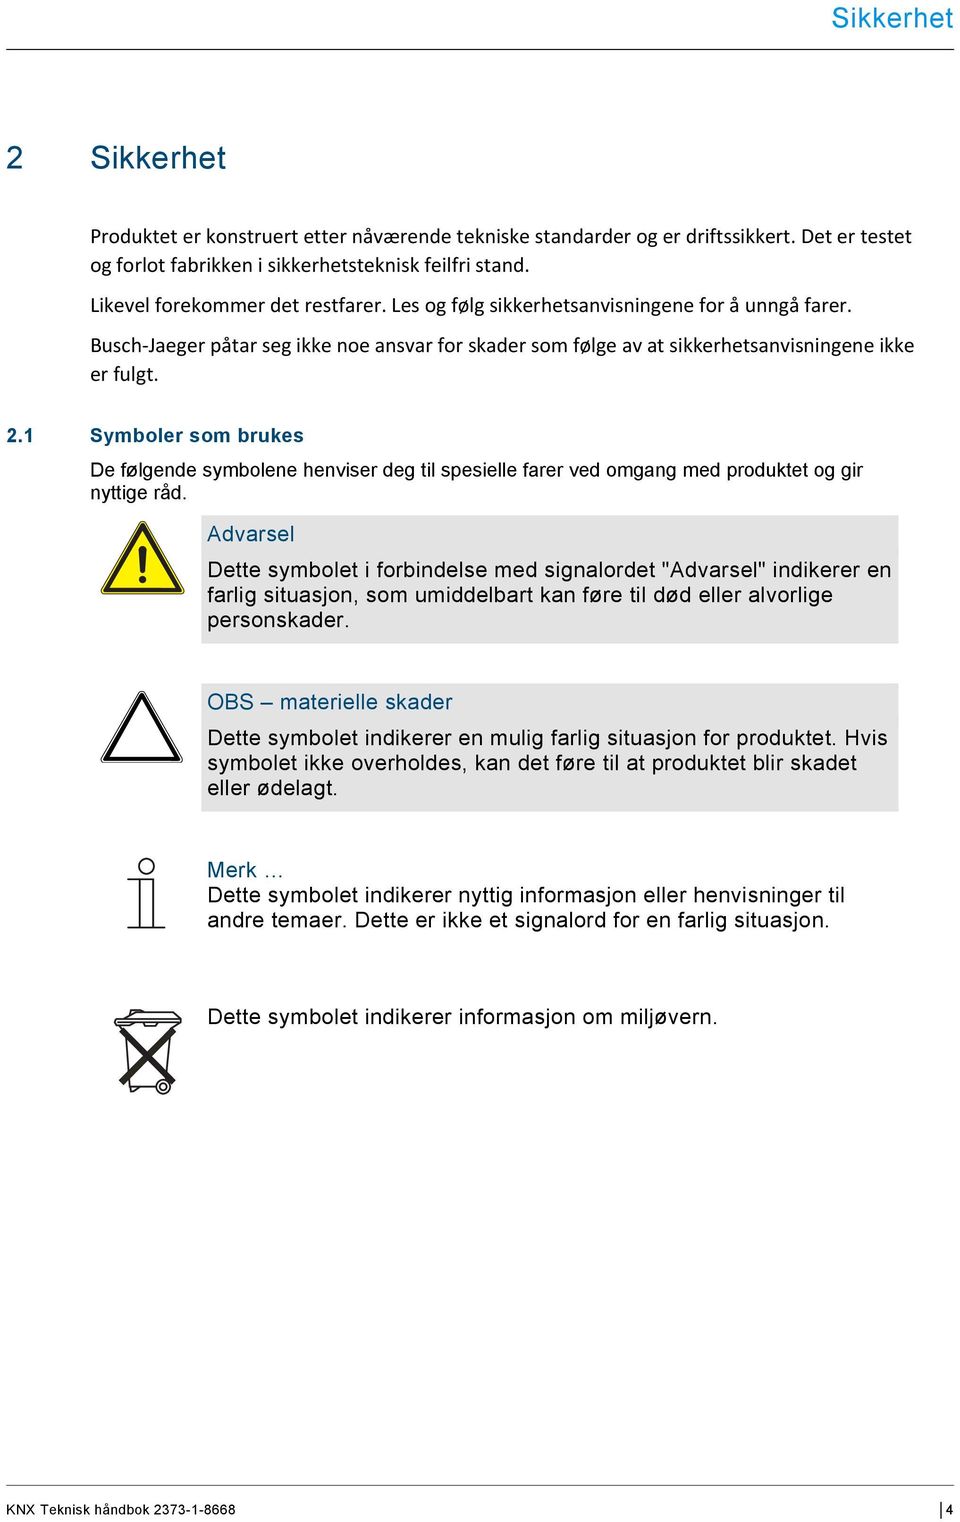 1 Symboler som brukes De følgende symbolene henviser deg til spesielle farer ved omgang med produktet og gir nyttige råd.